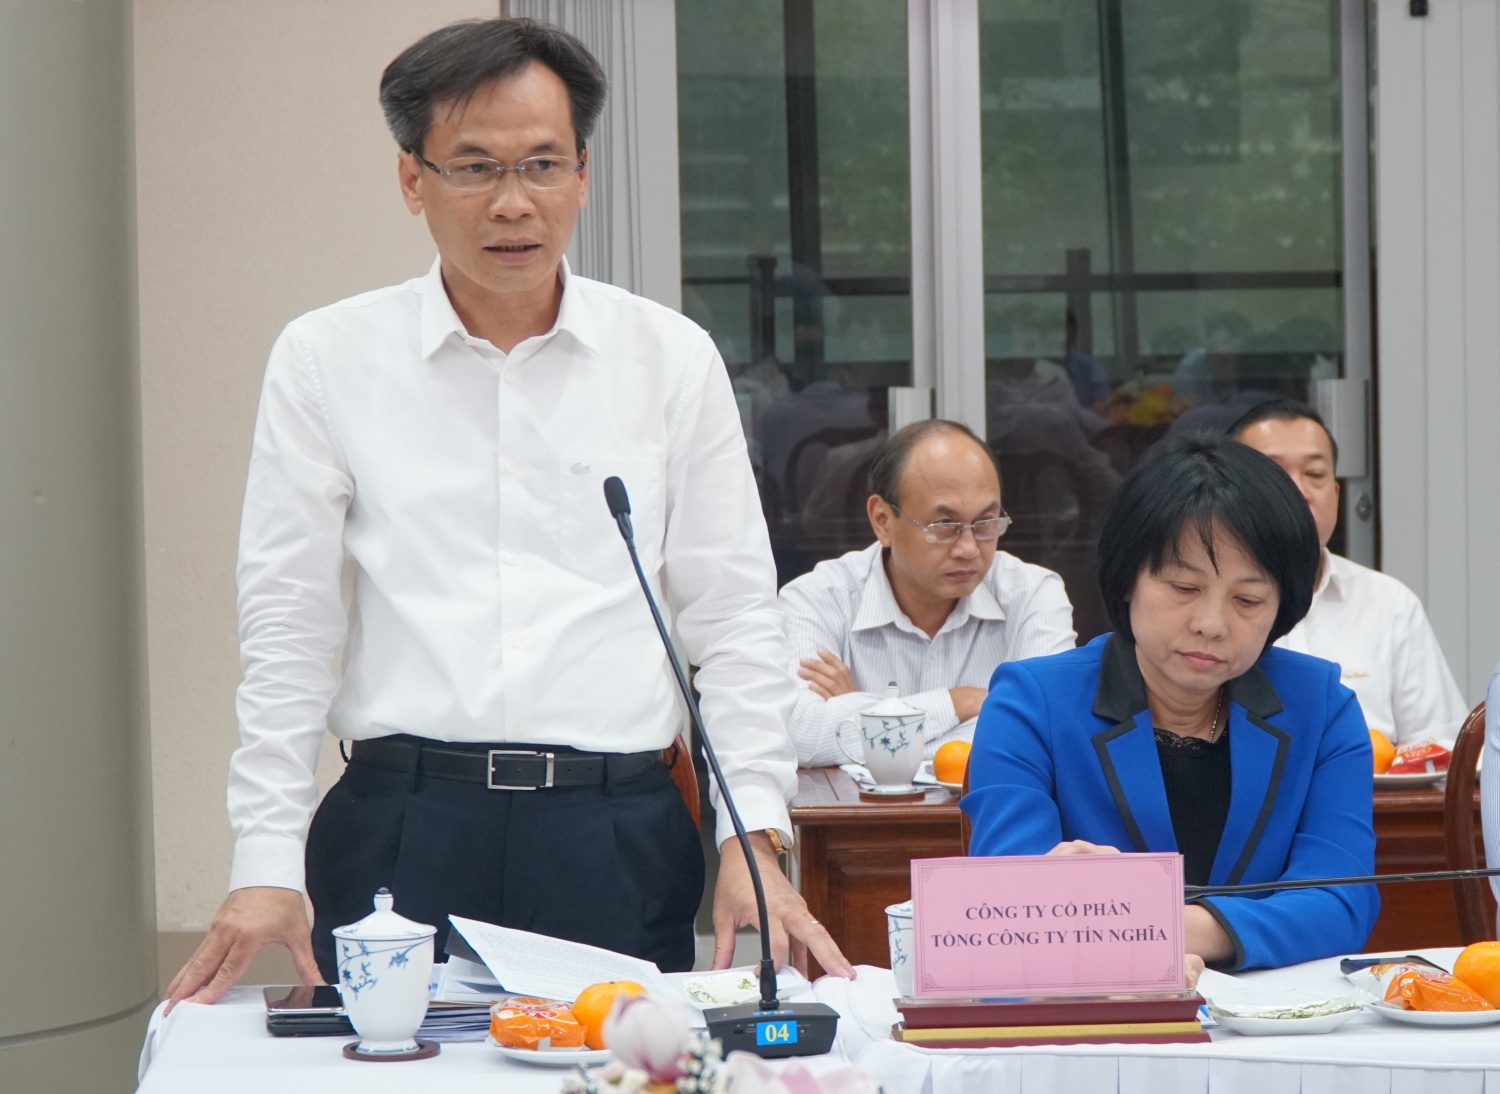 Ban Chỉ đạo Nhà nước làm việc với tỉnh Đồng Nai: Thống nhất phương án tháo gỡ vướng mắc Dự án NMĐ Nhơn Trạch 3 và 4